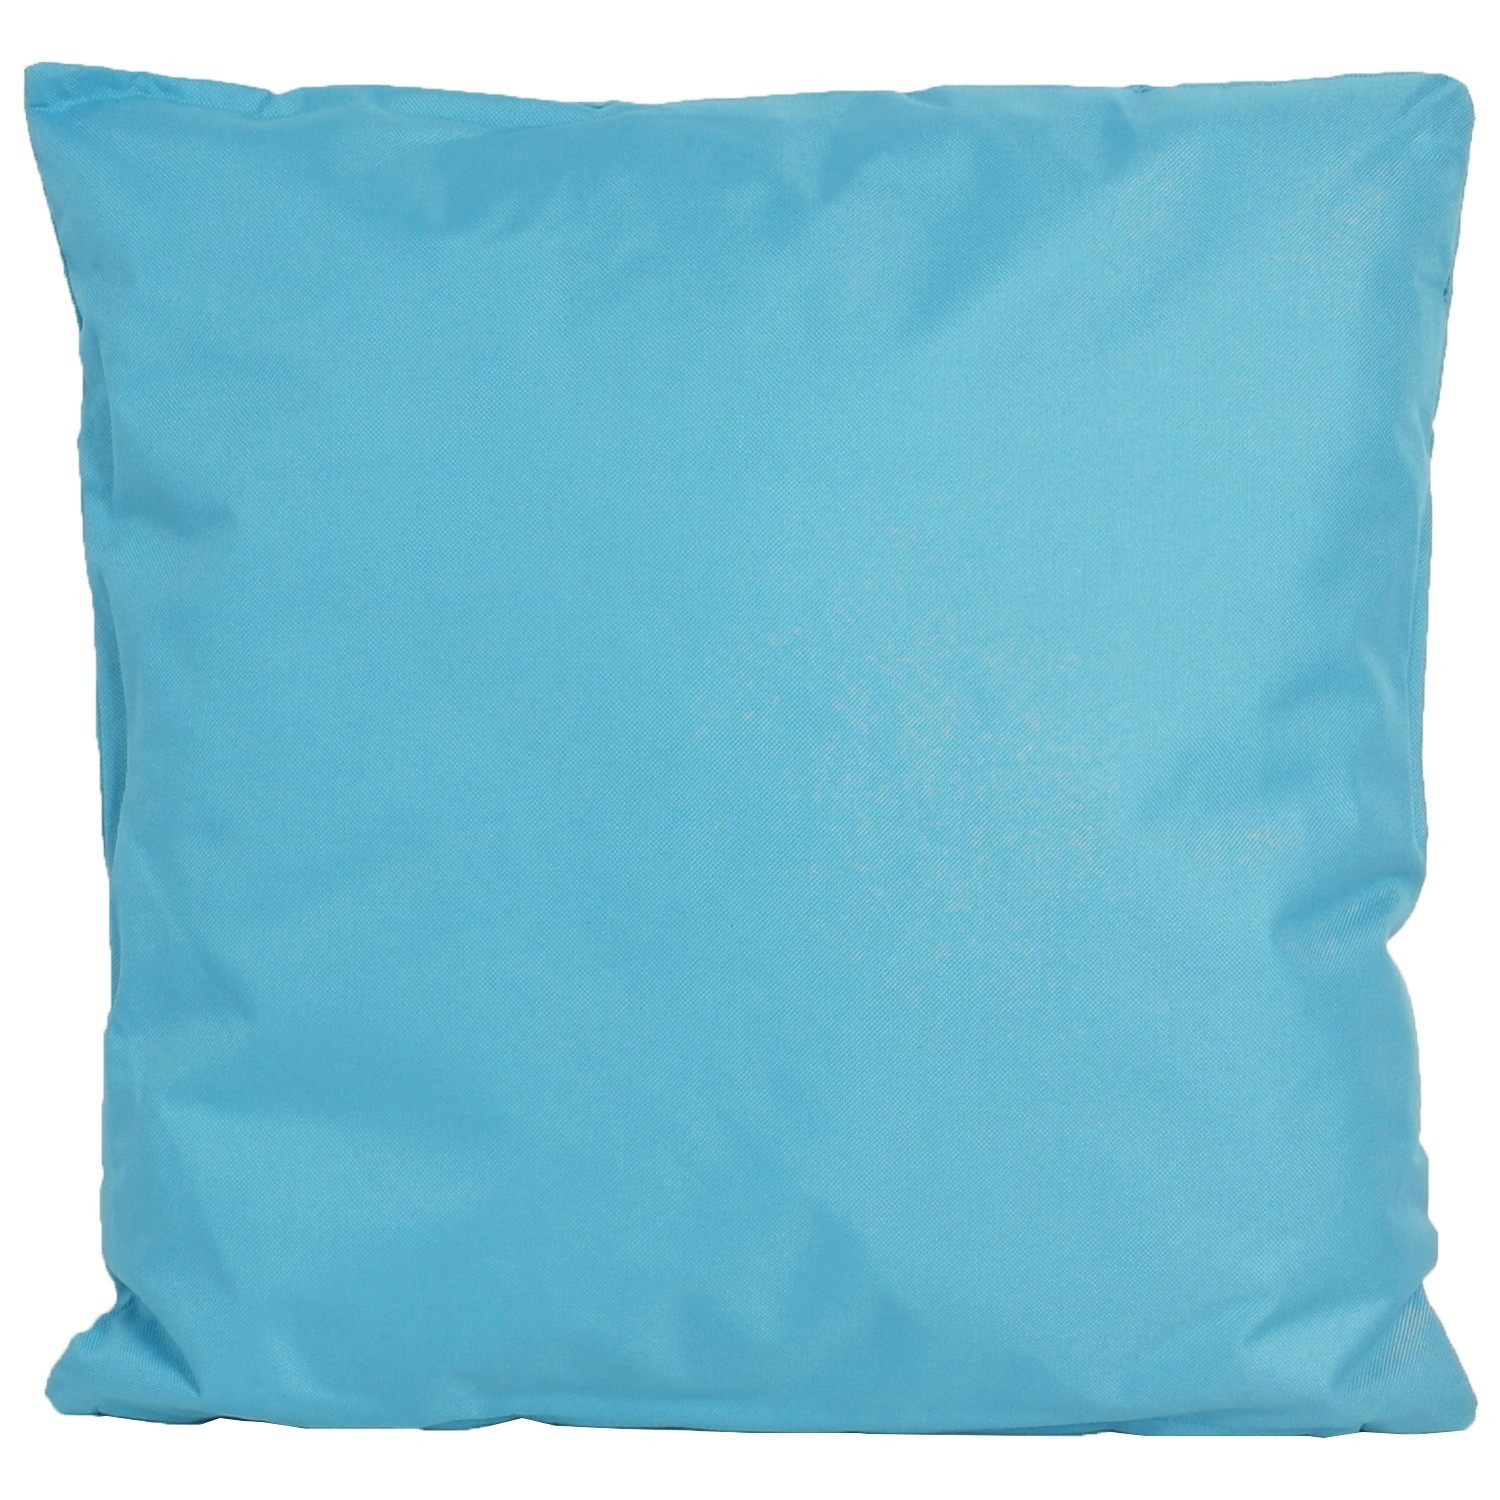 1x Bank/Sier kussens voor binnen en buiten in de kleur lichtblauw 45 x 45 cm